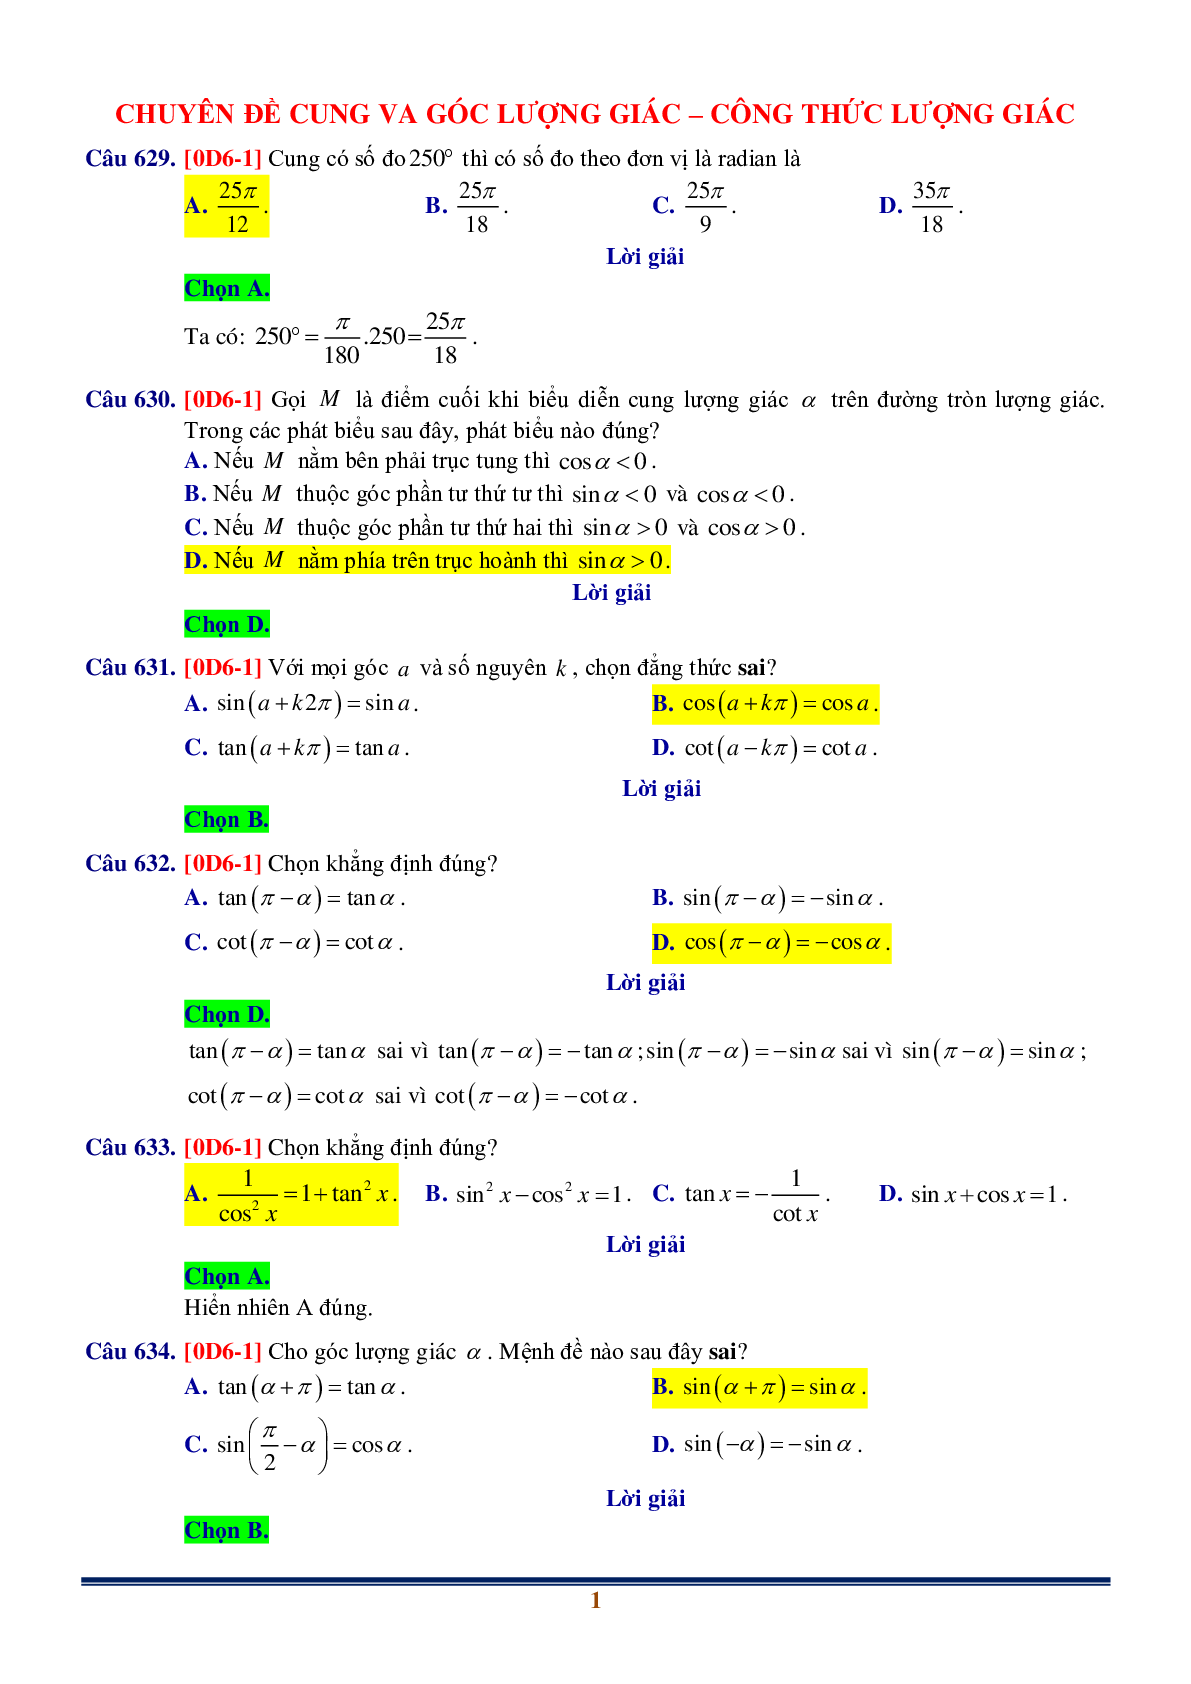 Chuyên đề Cung lượng giác và Công thức lượng giác (trang 1)